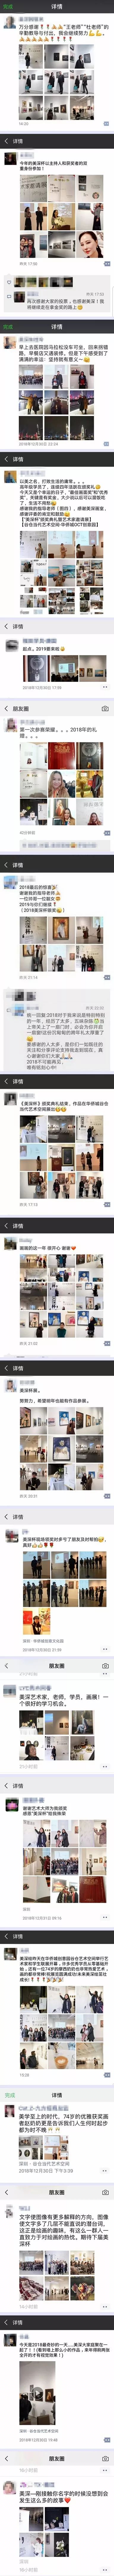 深圳最好的美术培训画室39